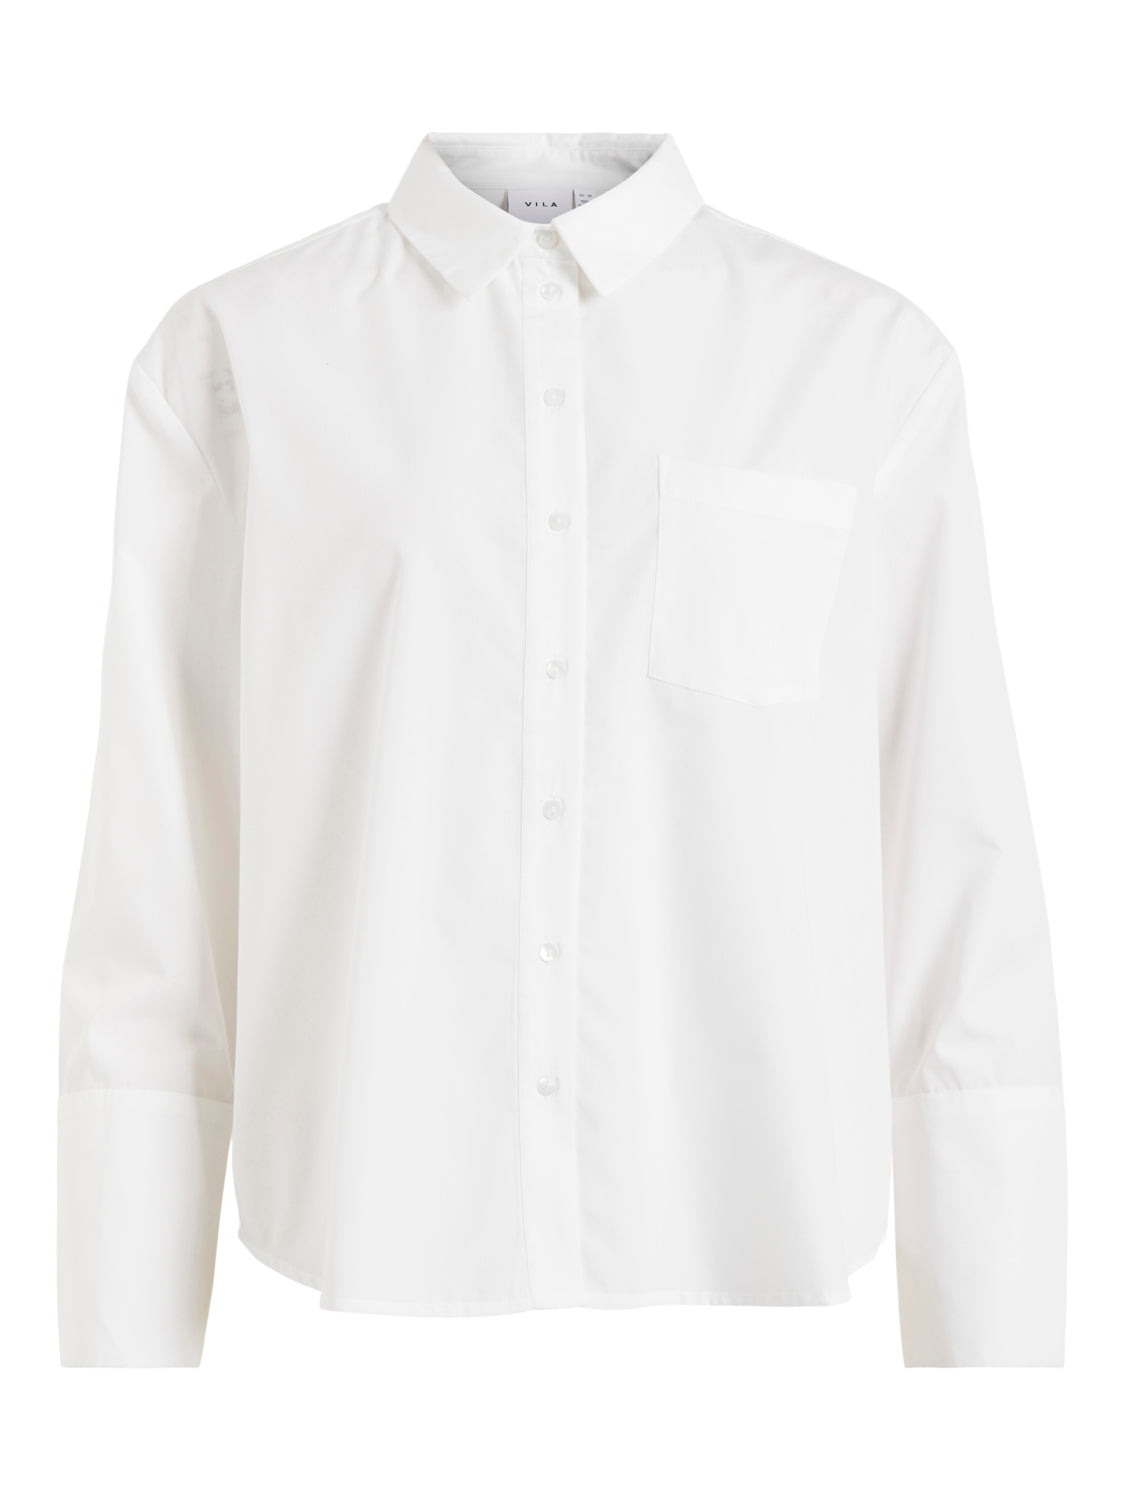 VIUNA Shirts - Bright White